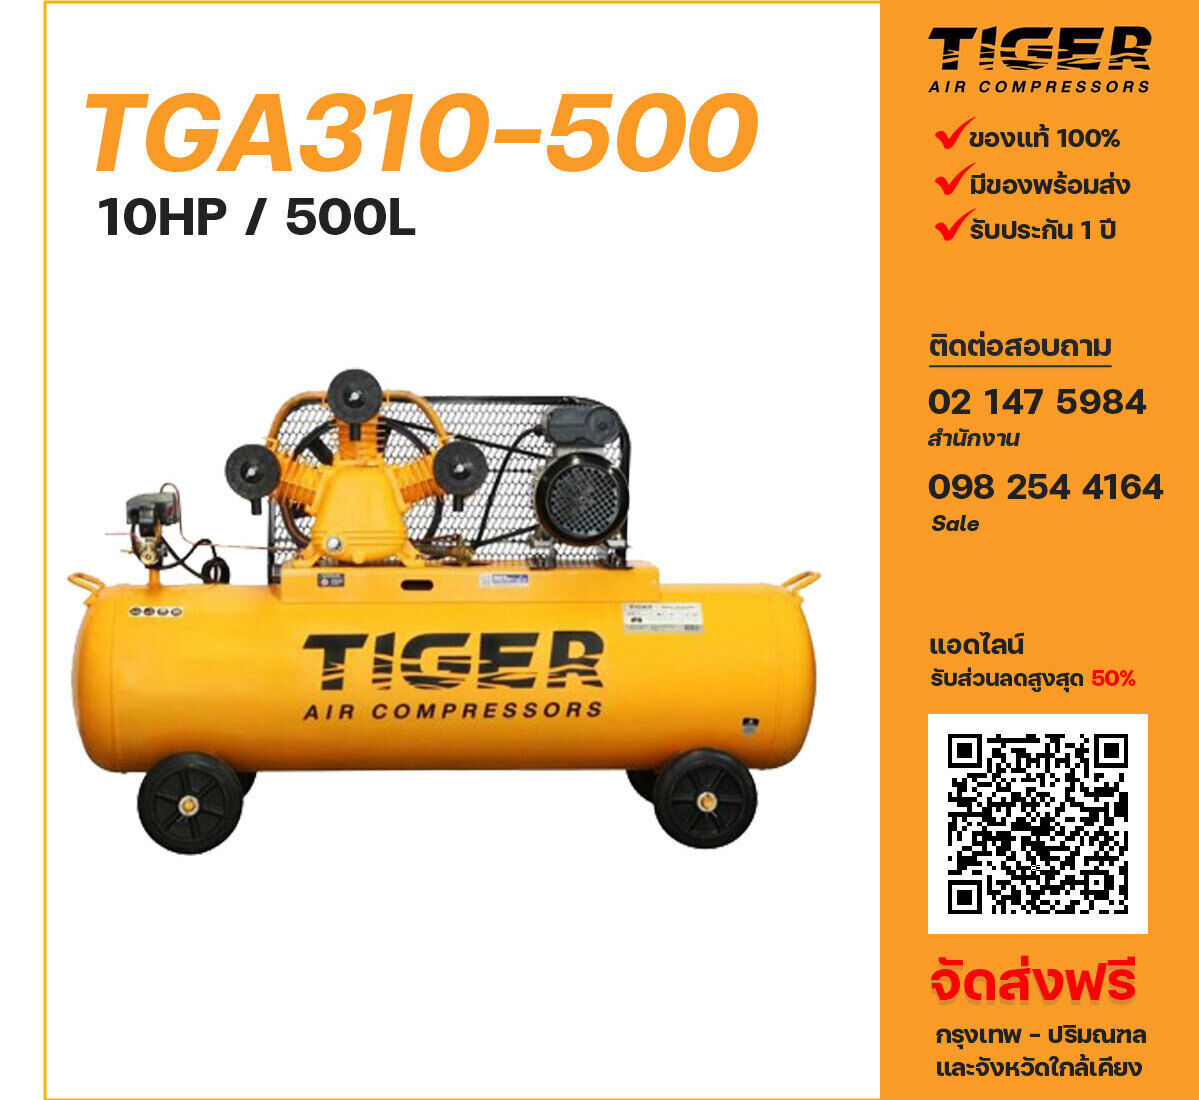 ปั๊มลมไทเกอร์ TIGER TGA310-500 380V ปั๊มลมลูกสูบ ขนาด 3 สูบ 10 แรงม้า 500 ลิตร TIGER พร้อมมอเตอร์ ไฟ 380V ส่งฟรี กรุงเทพฯ-ปริมณฑล รับประกัน 1 ปี